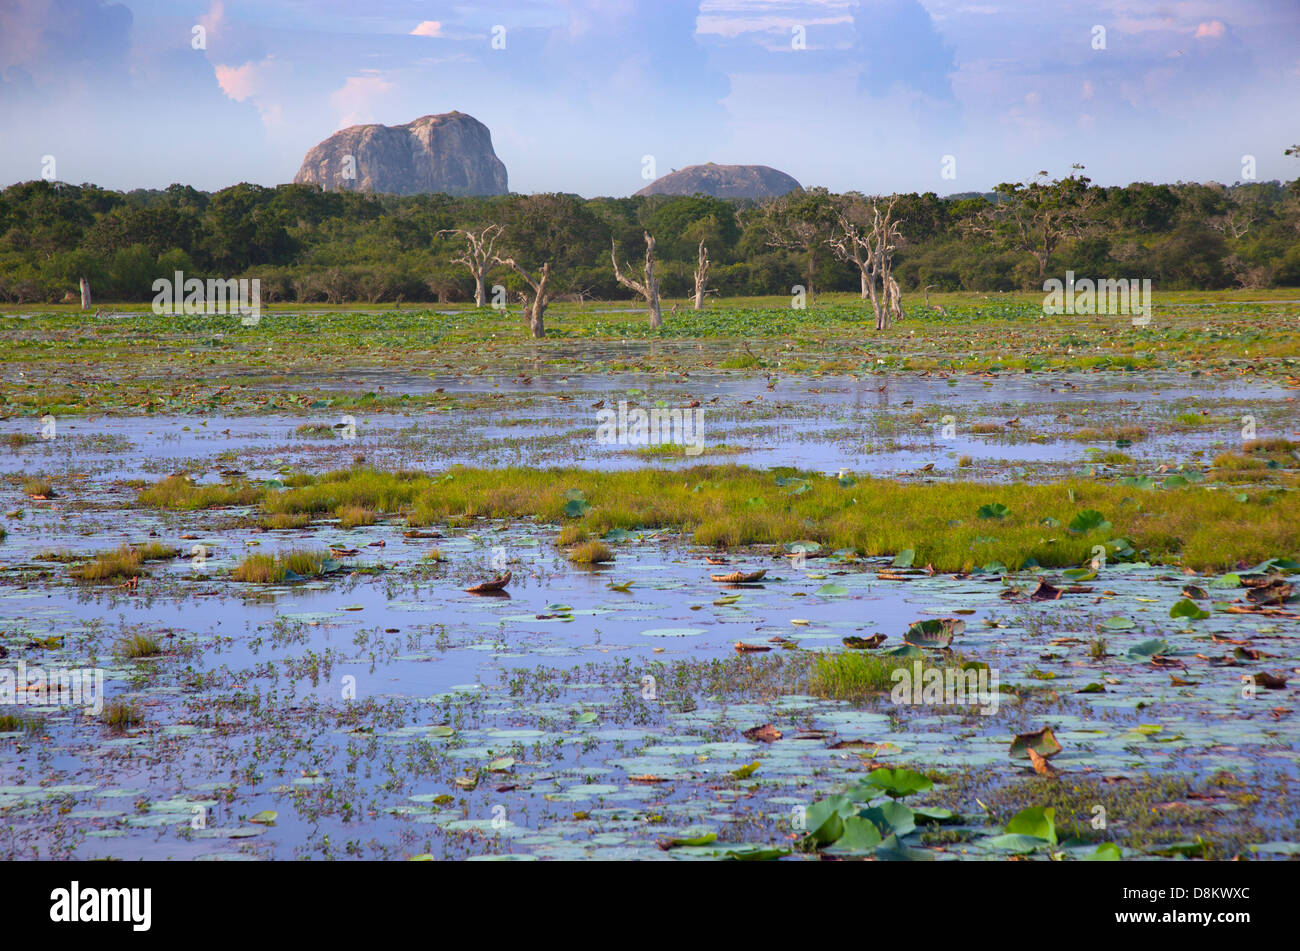 Yala National Park Sri Lanka Indian sub-continent Stock Photo